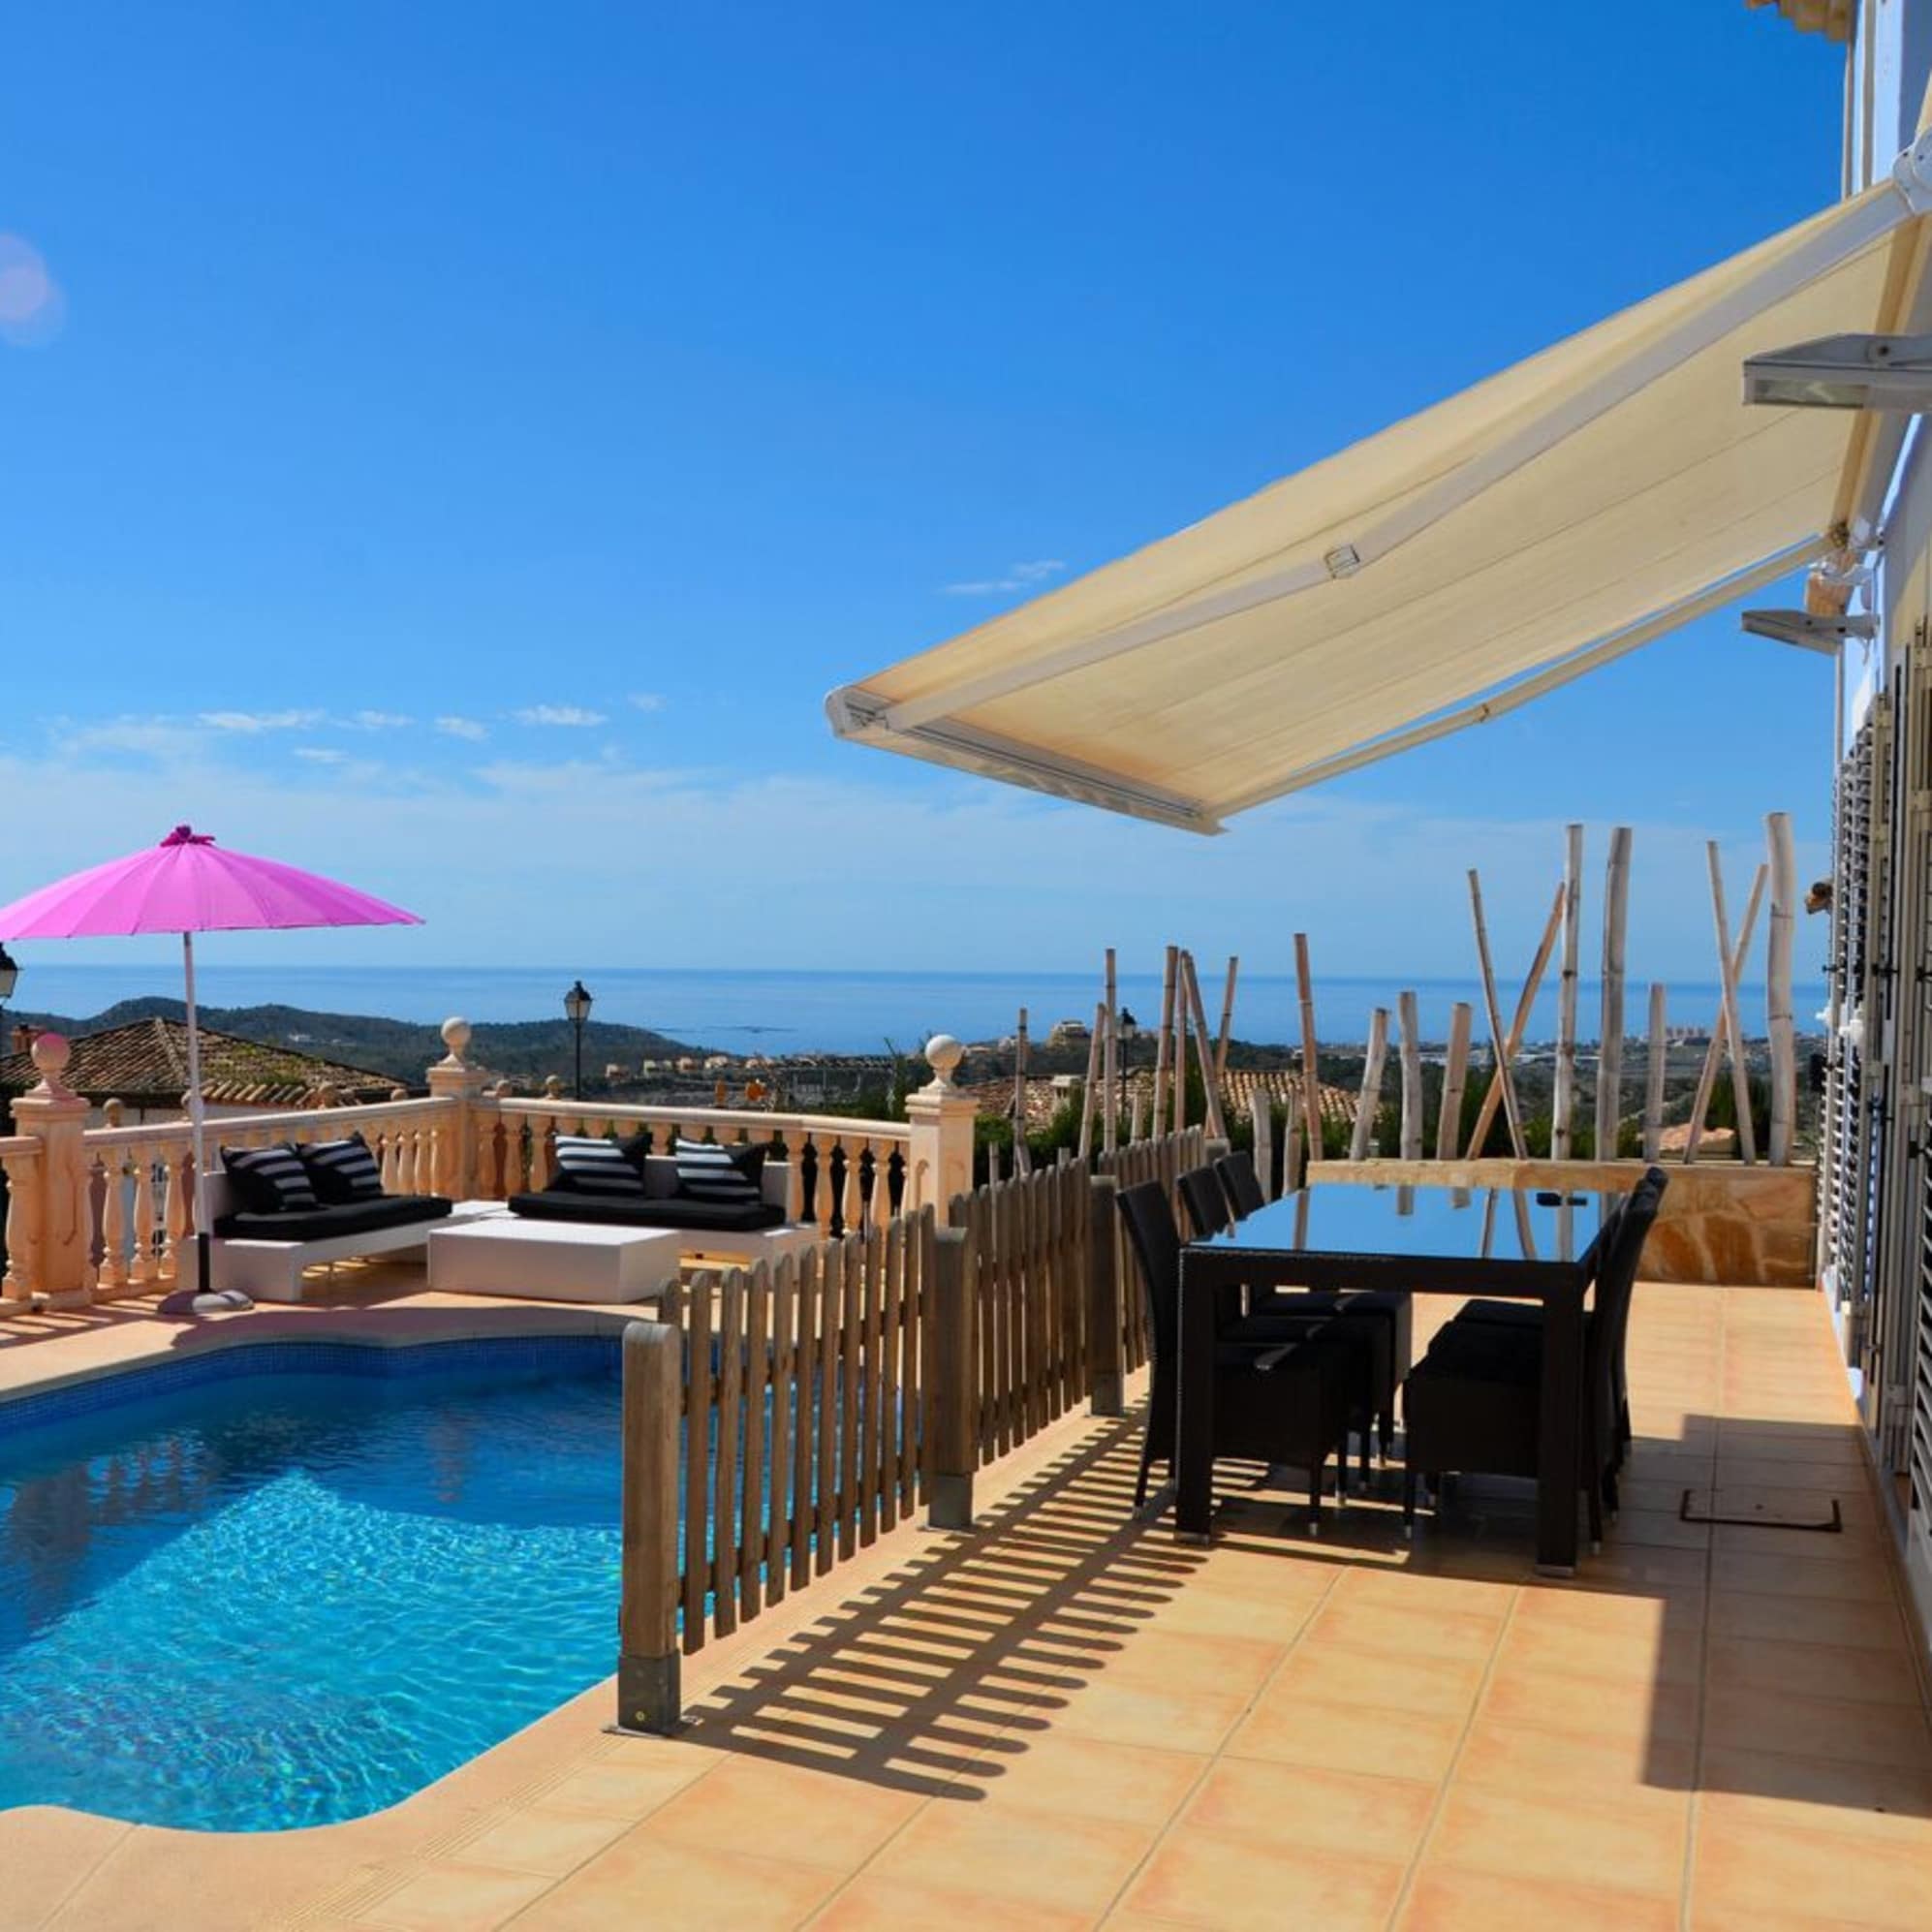 Ferienhaus an der Costa Blanca mit großer Terrasse, Pool und Weitblick übers Meer